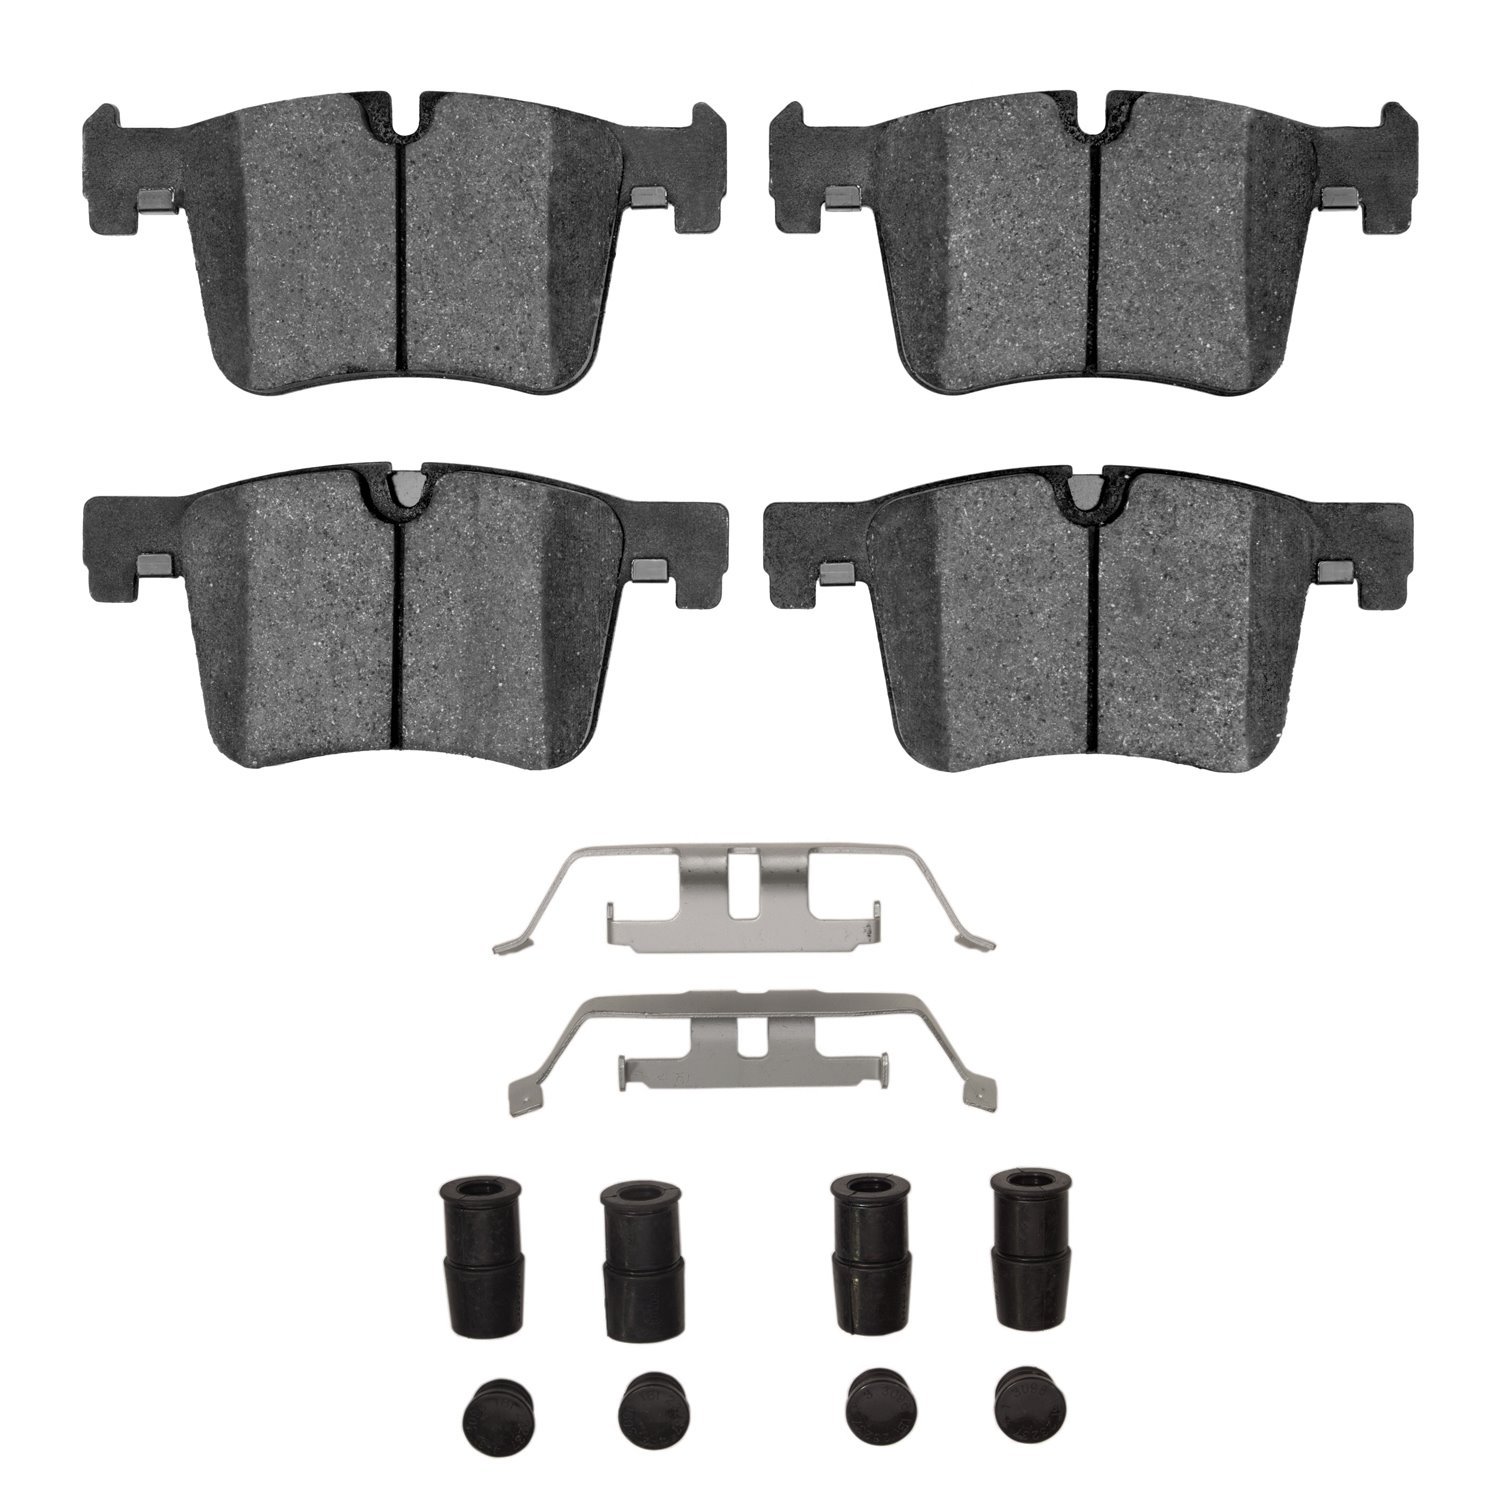 1552-1561-01 5000 Advanced Low-Metallic Brake Pads & Hardware Kit, 2011-2018 BMW, Position: Front